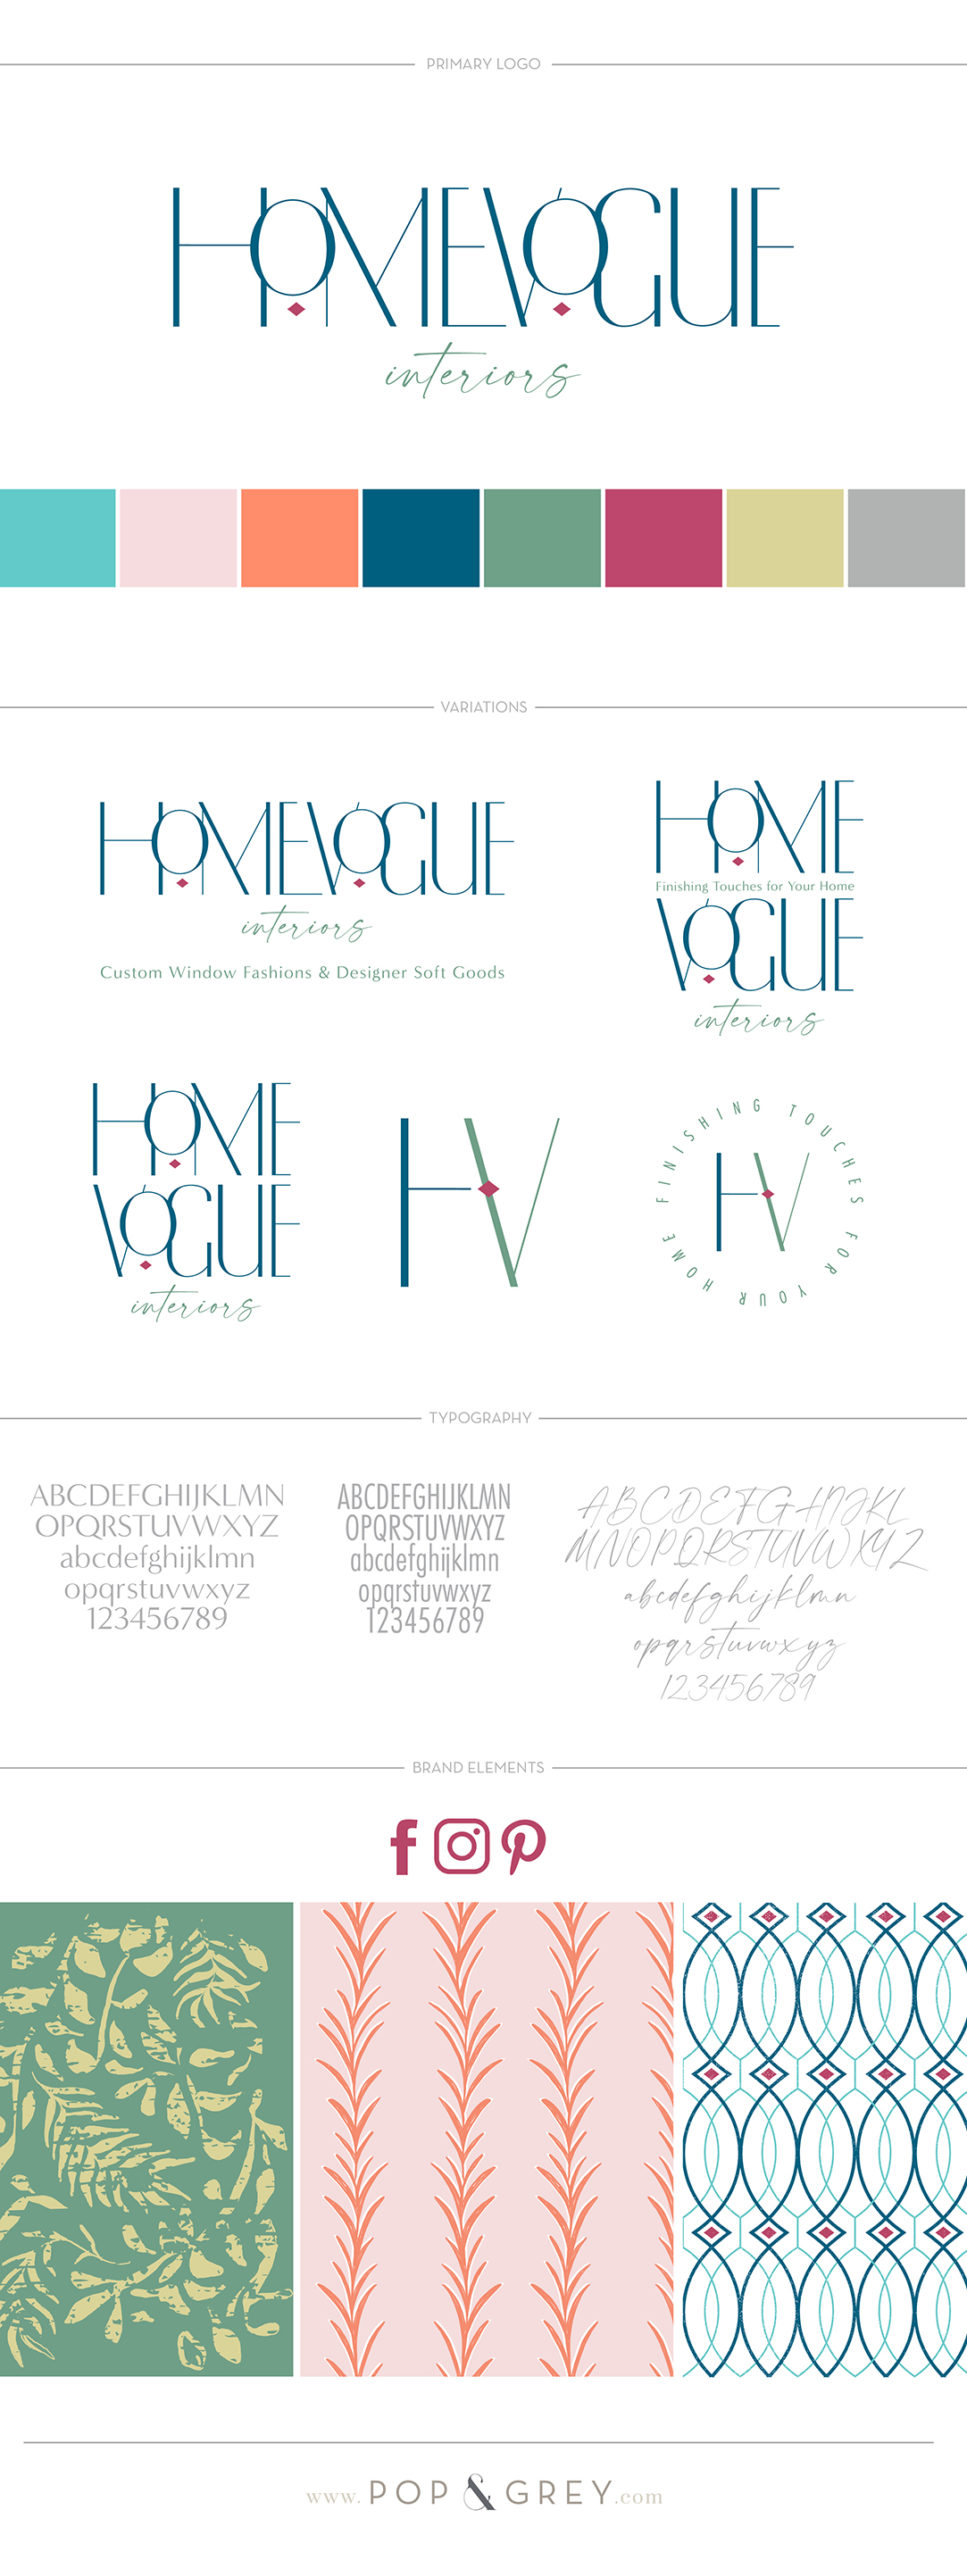 home vogue interiors brand and website design by pop & grey